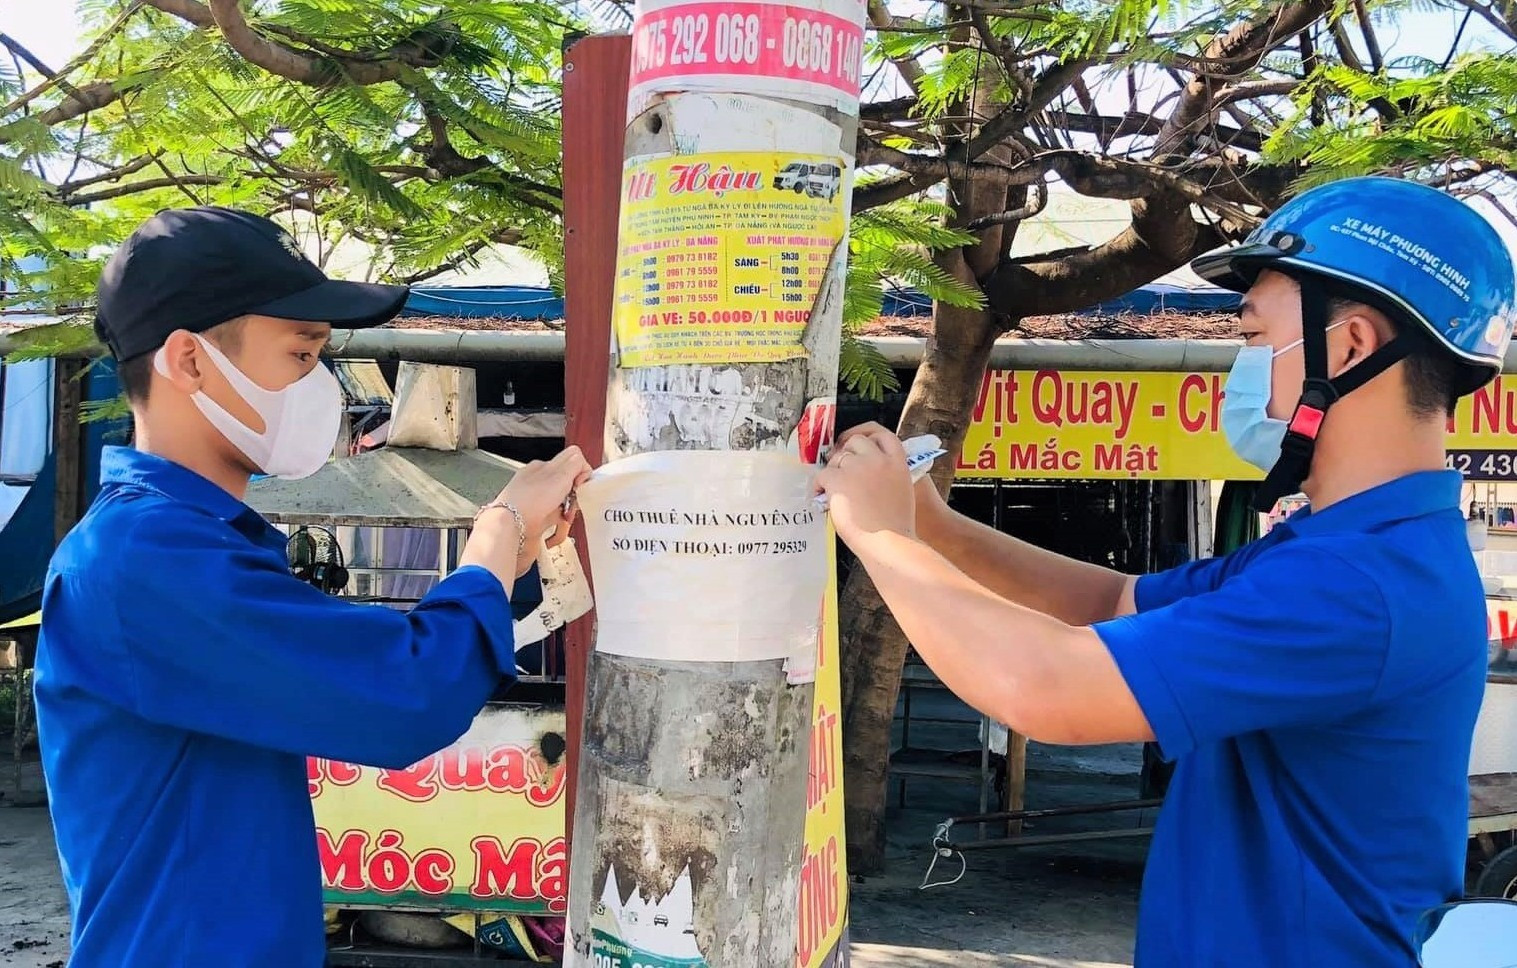 Tuổi trẻ thị trấn Phú Thịnh (Phú Ninh) bóc dỡ quảng cáo sai quy định. Ảnh: CTV